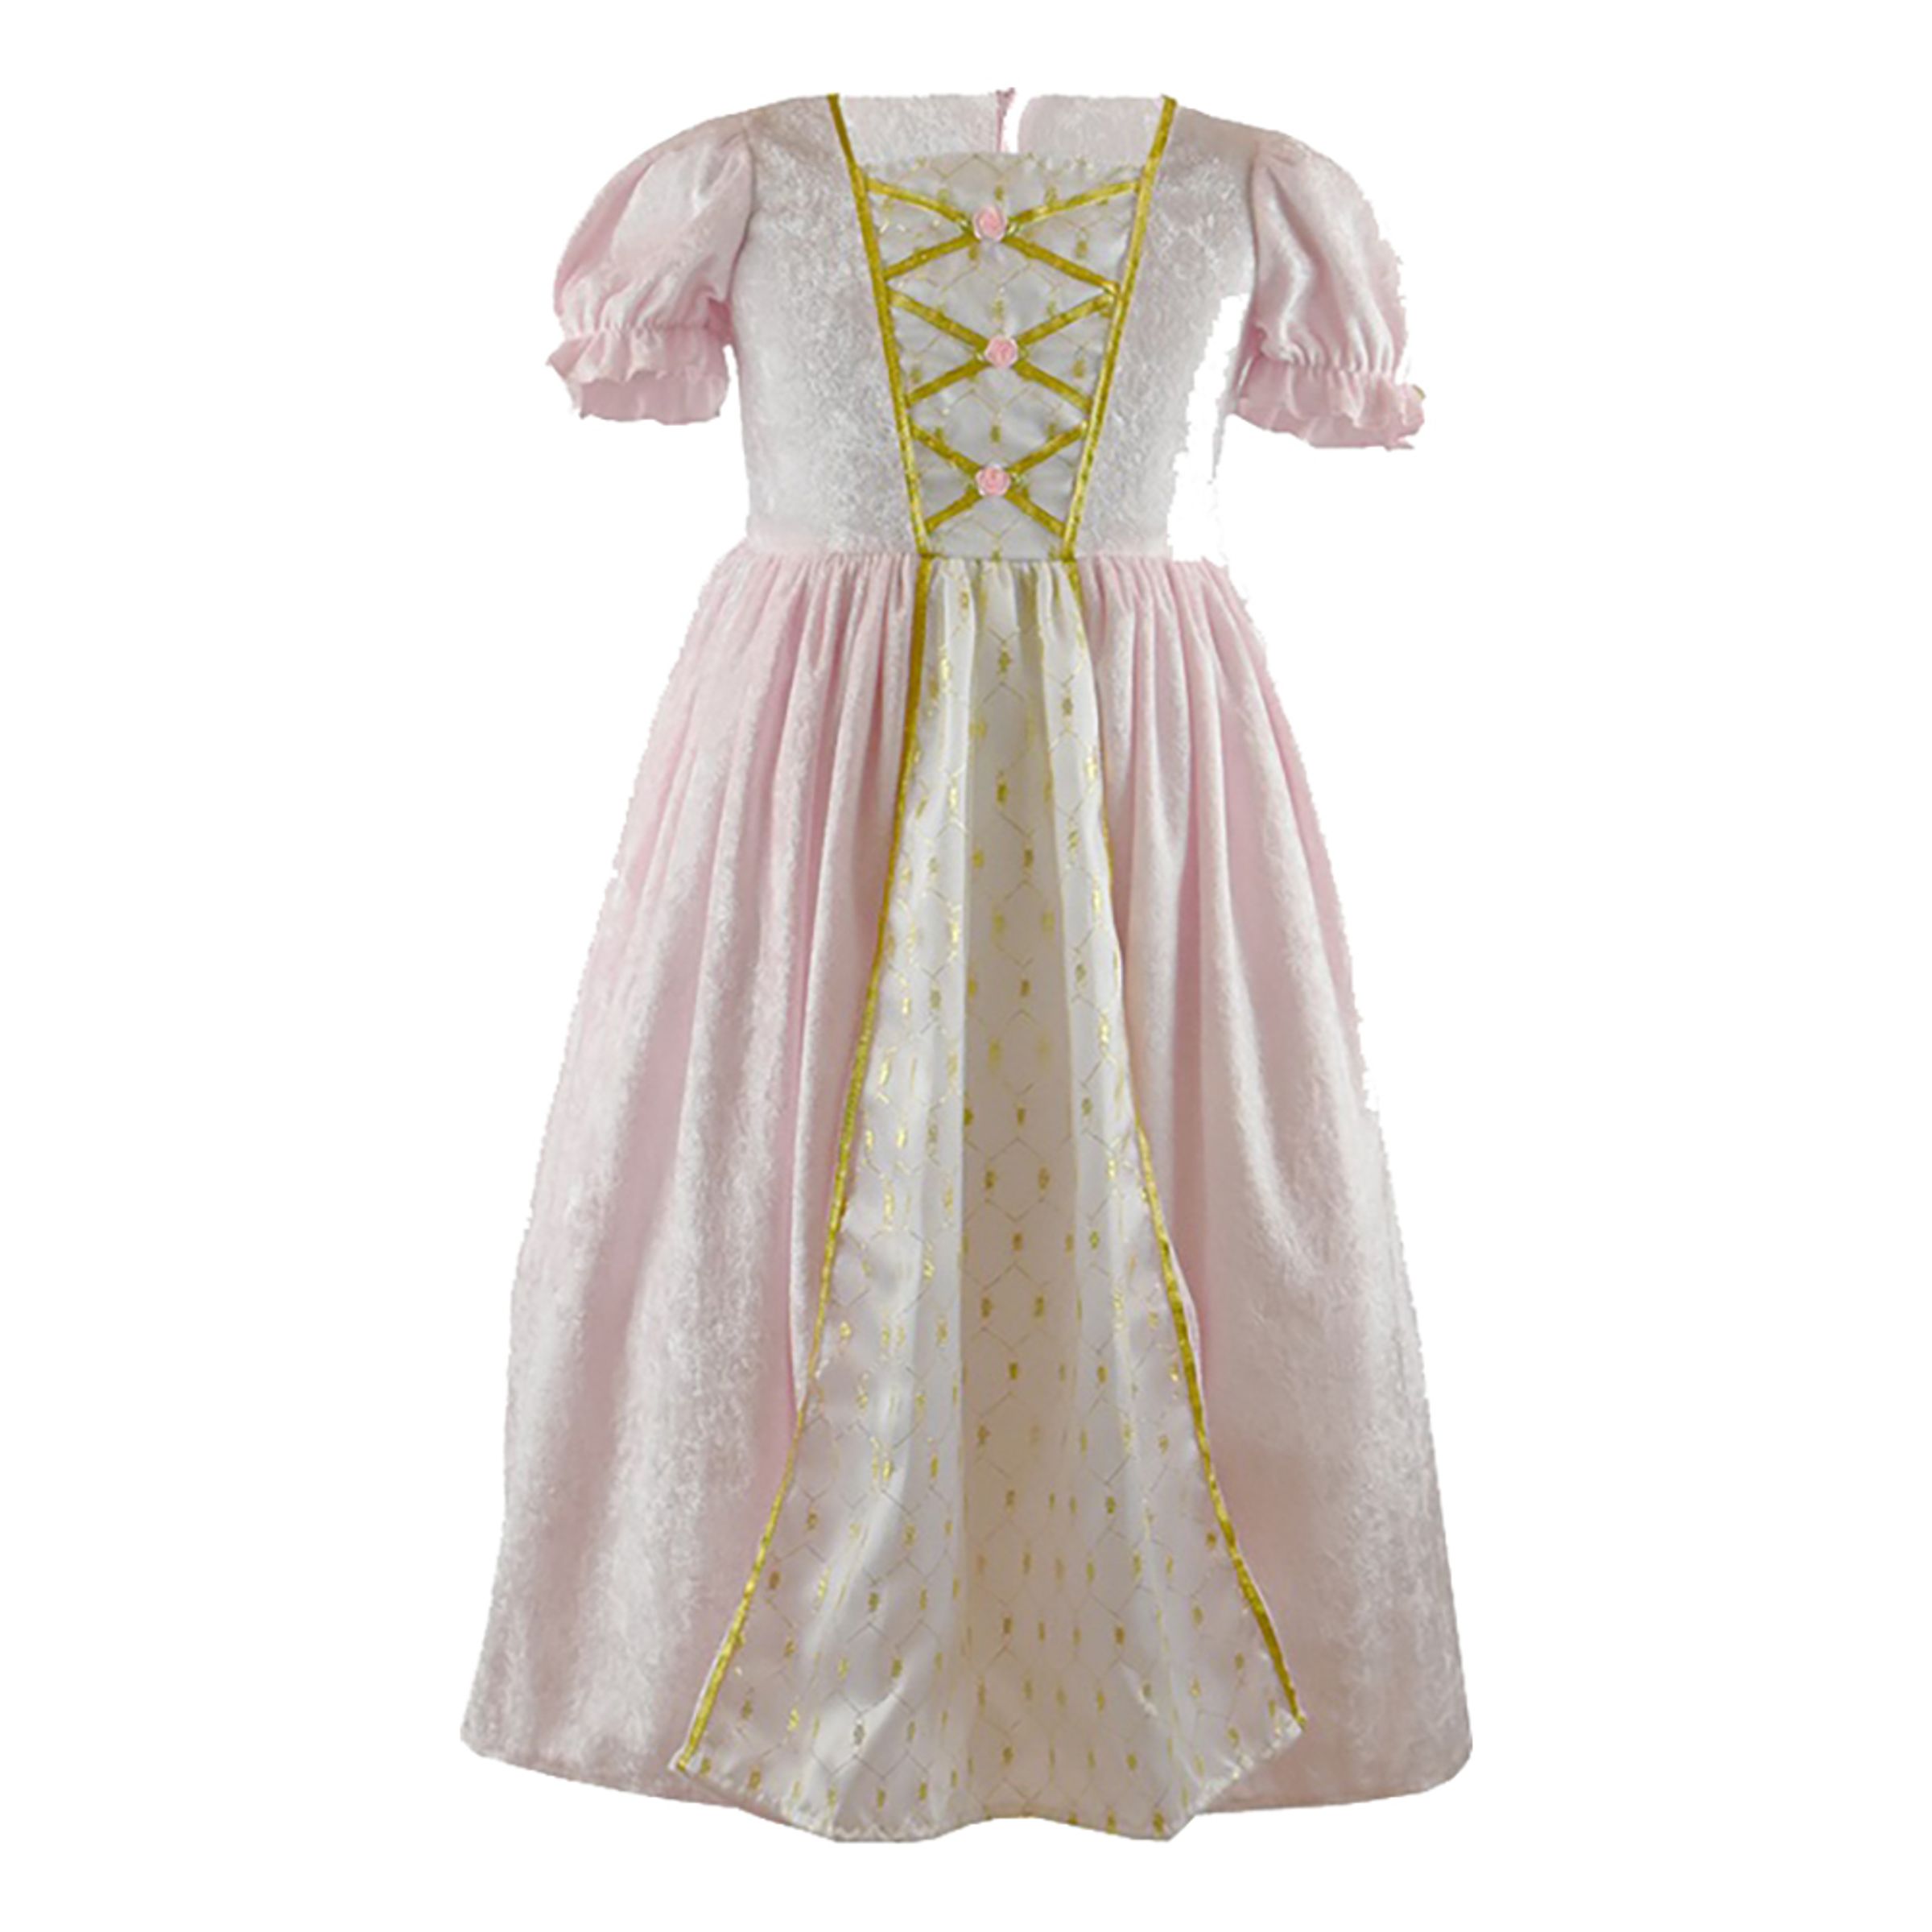 Prinsessklänning Sammetsrosa Barn - Large